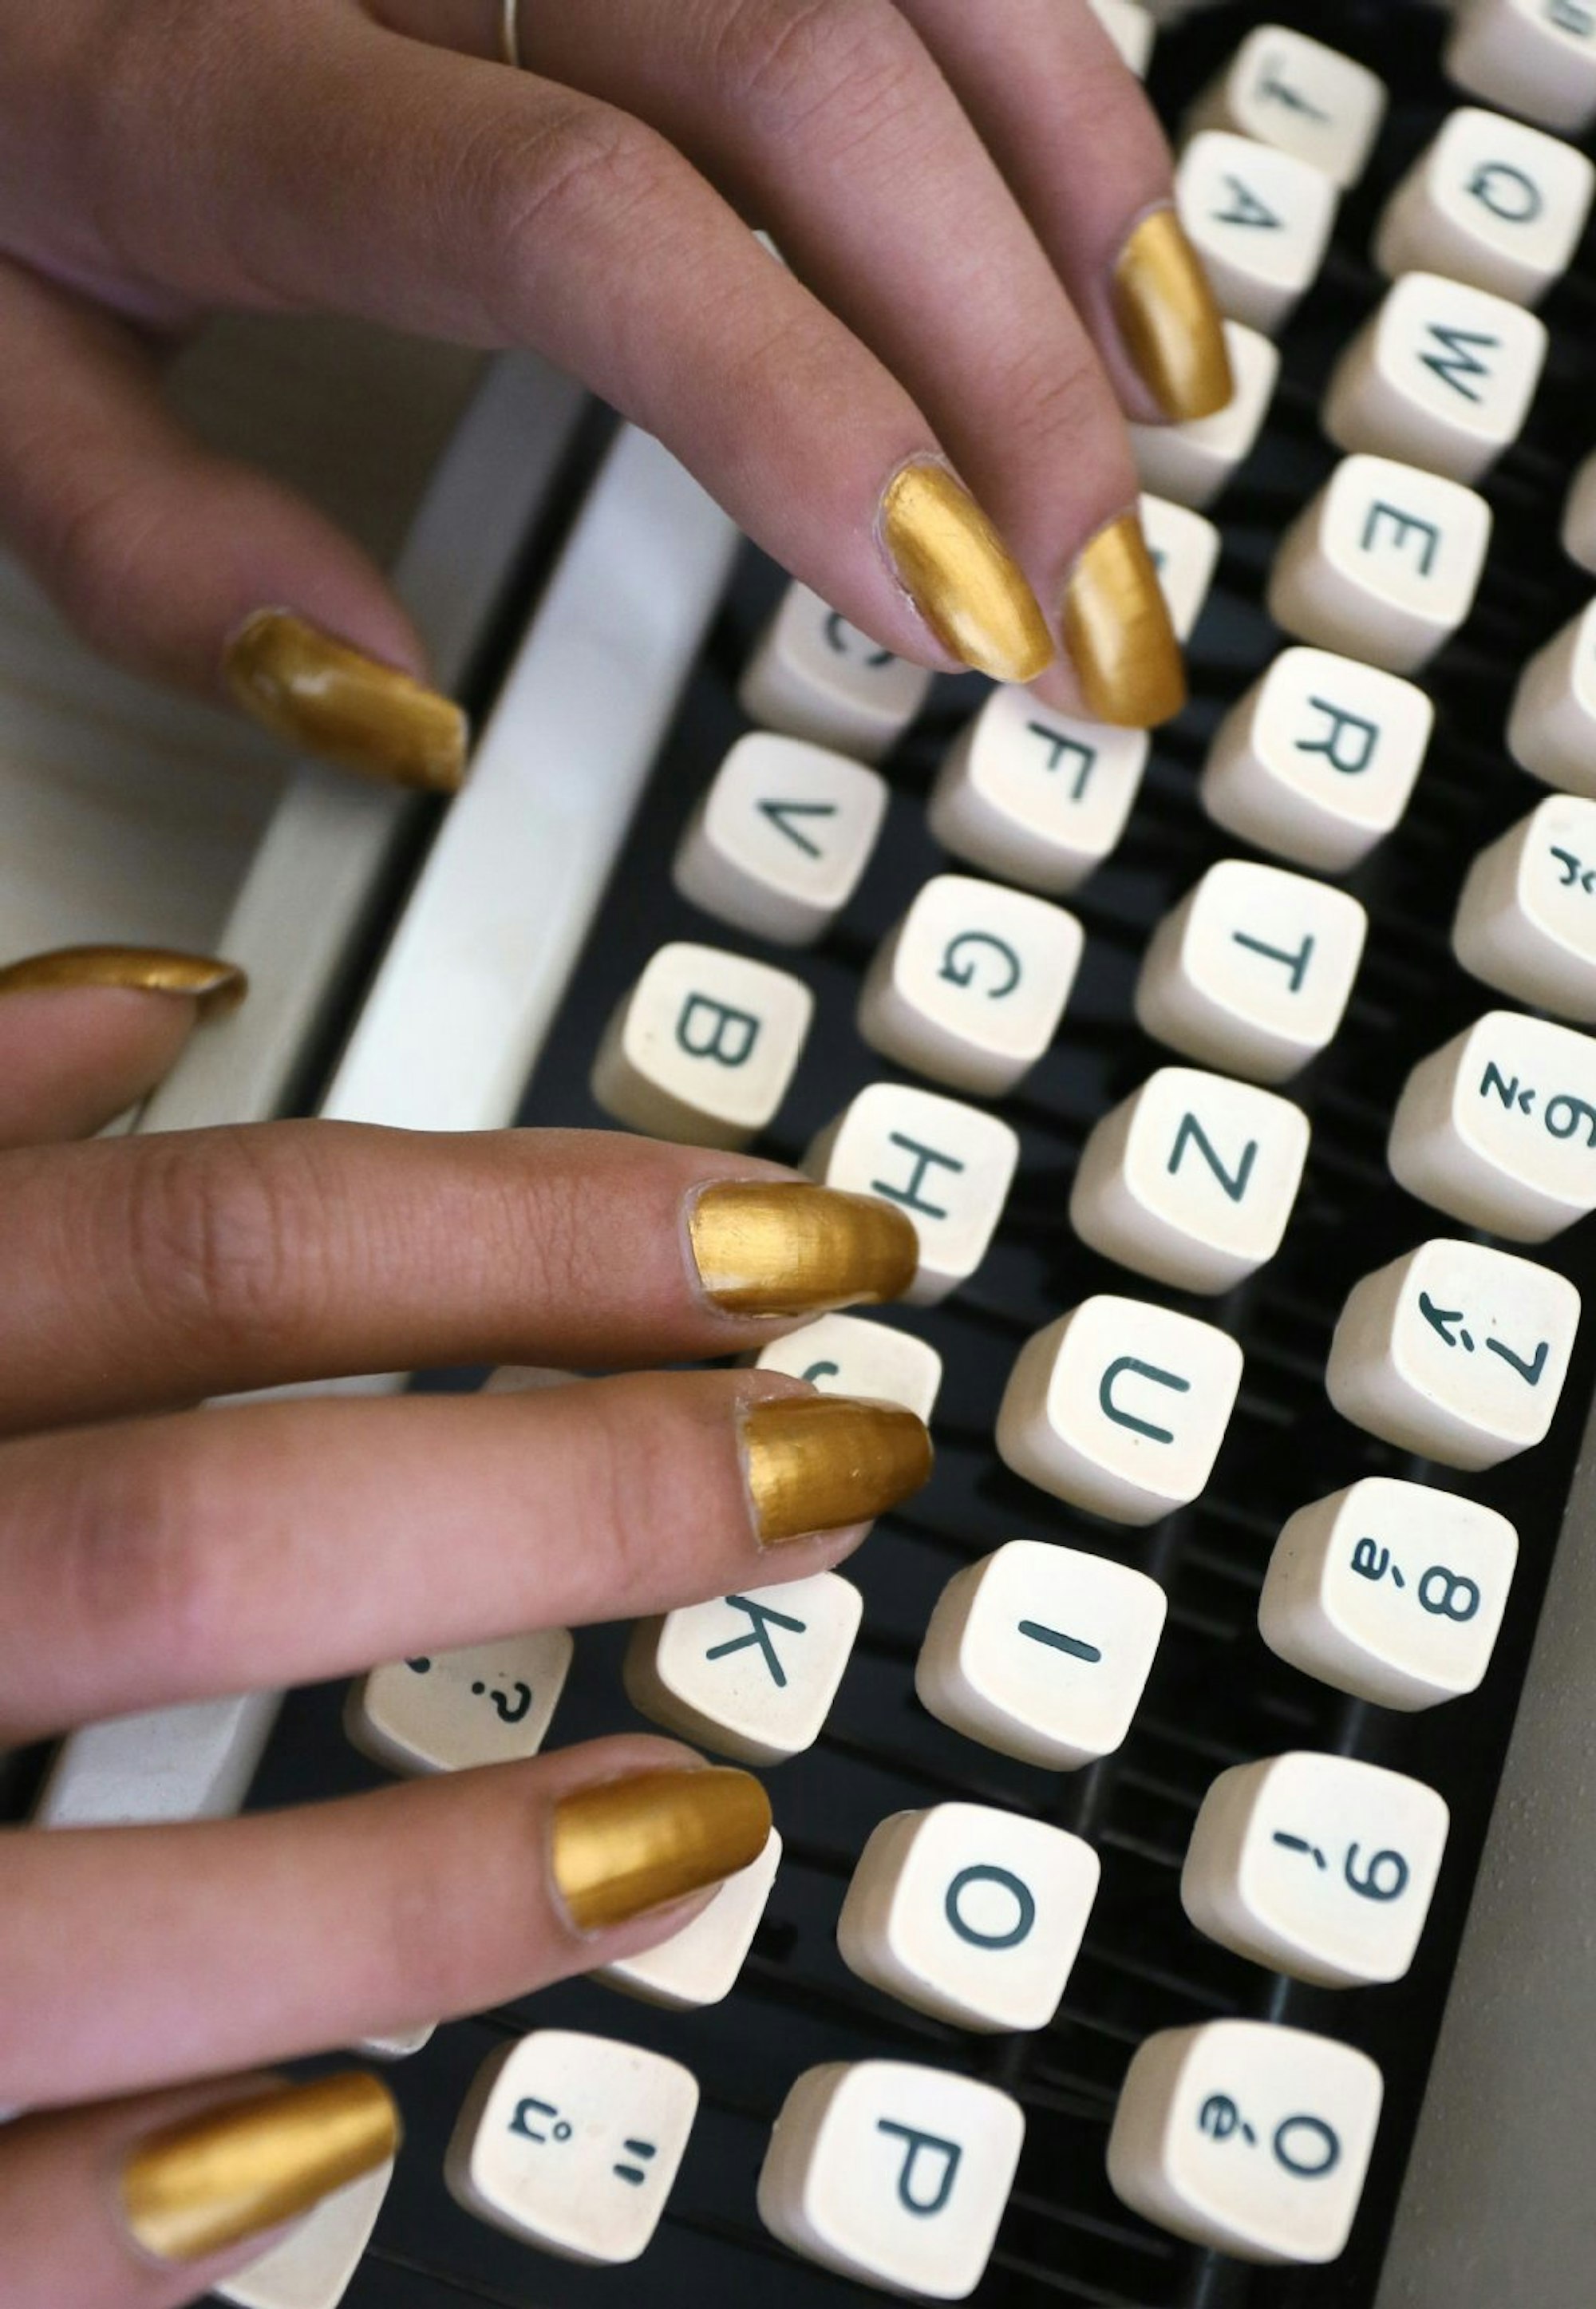 Flinke, bunt lackierte Fingernägel tanzen über die klappernde Tastatur einer Schreibmaschine – das war einmal.